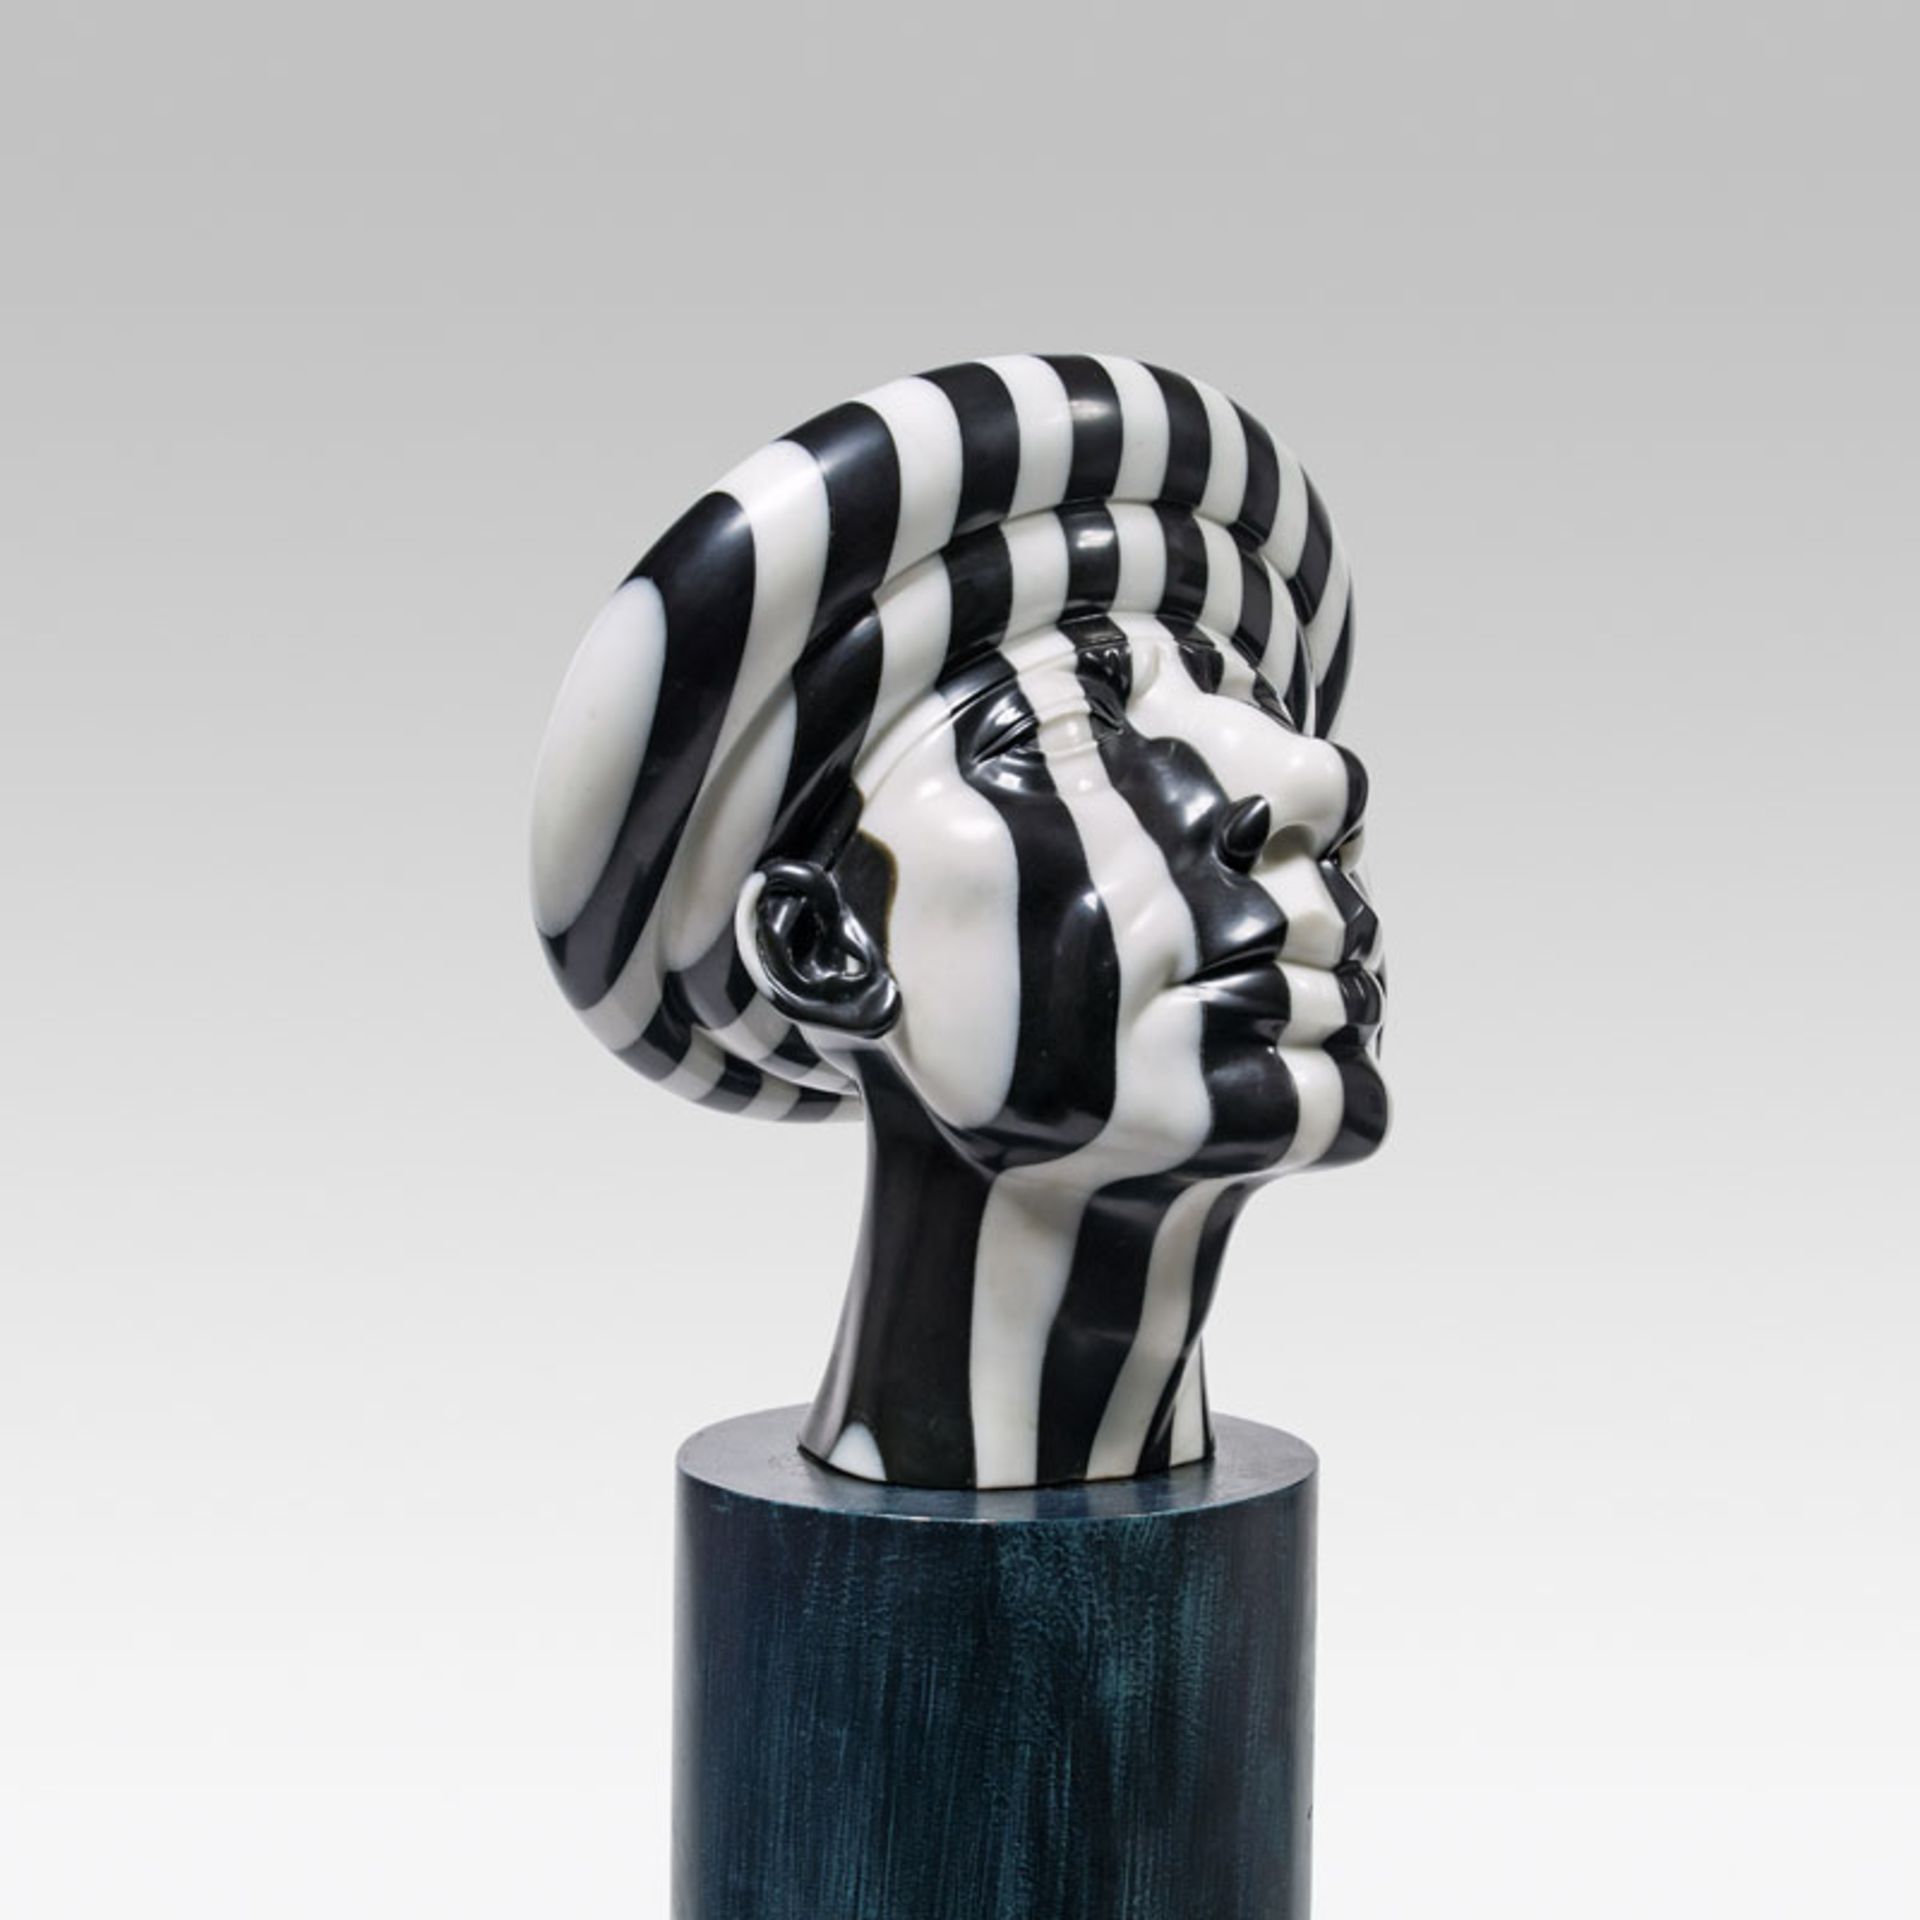 Rudolf Hausner *Adam, 1975 marble; 43 × 36 × 37 cm (base: h. 81 cm)

Rudolf Hausner *Adam, 1975